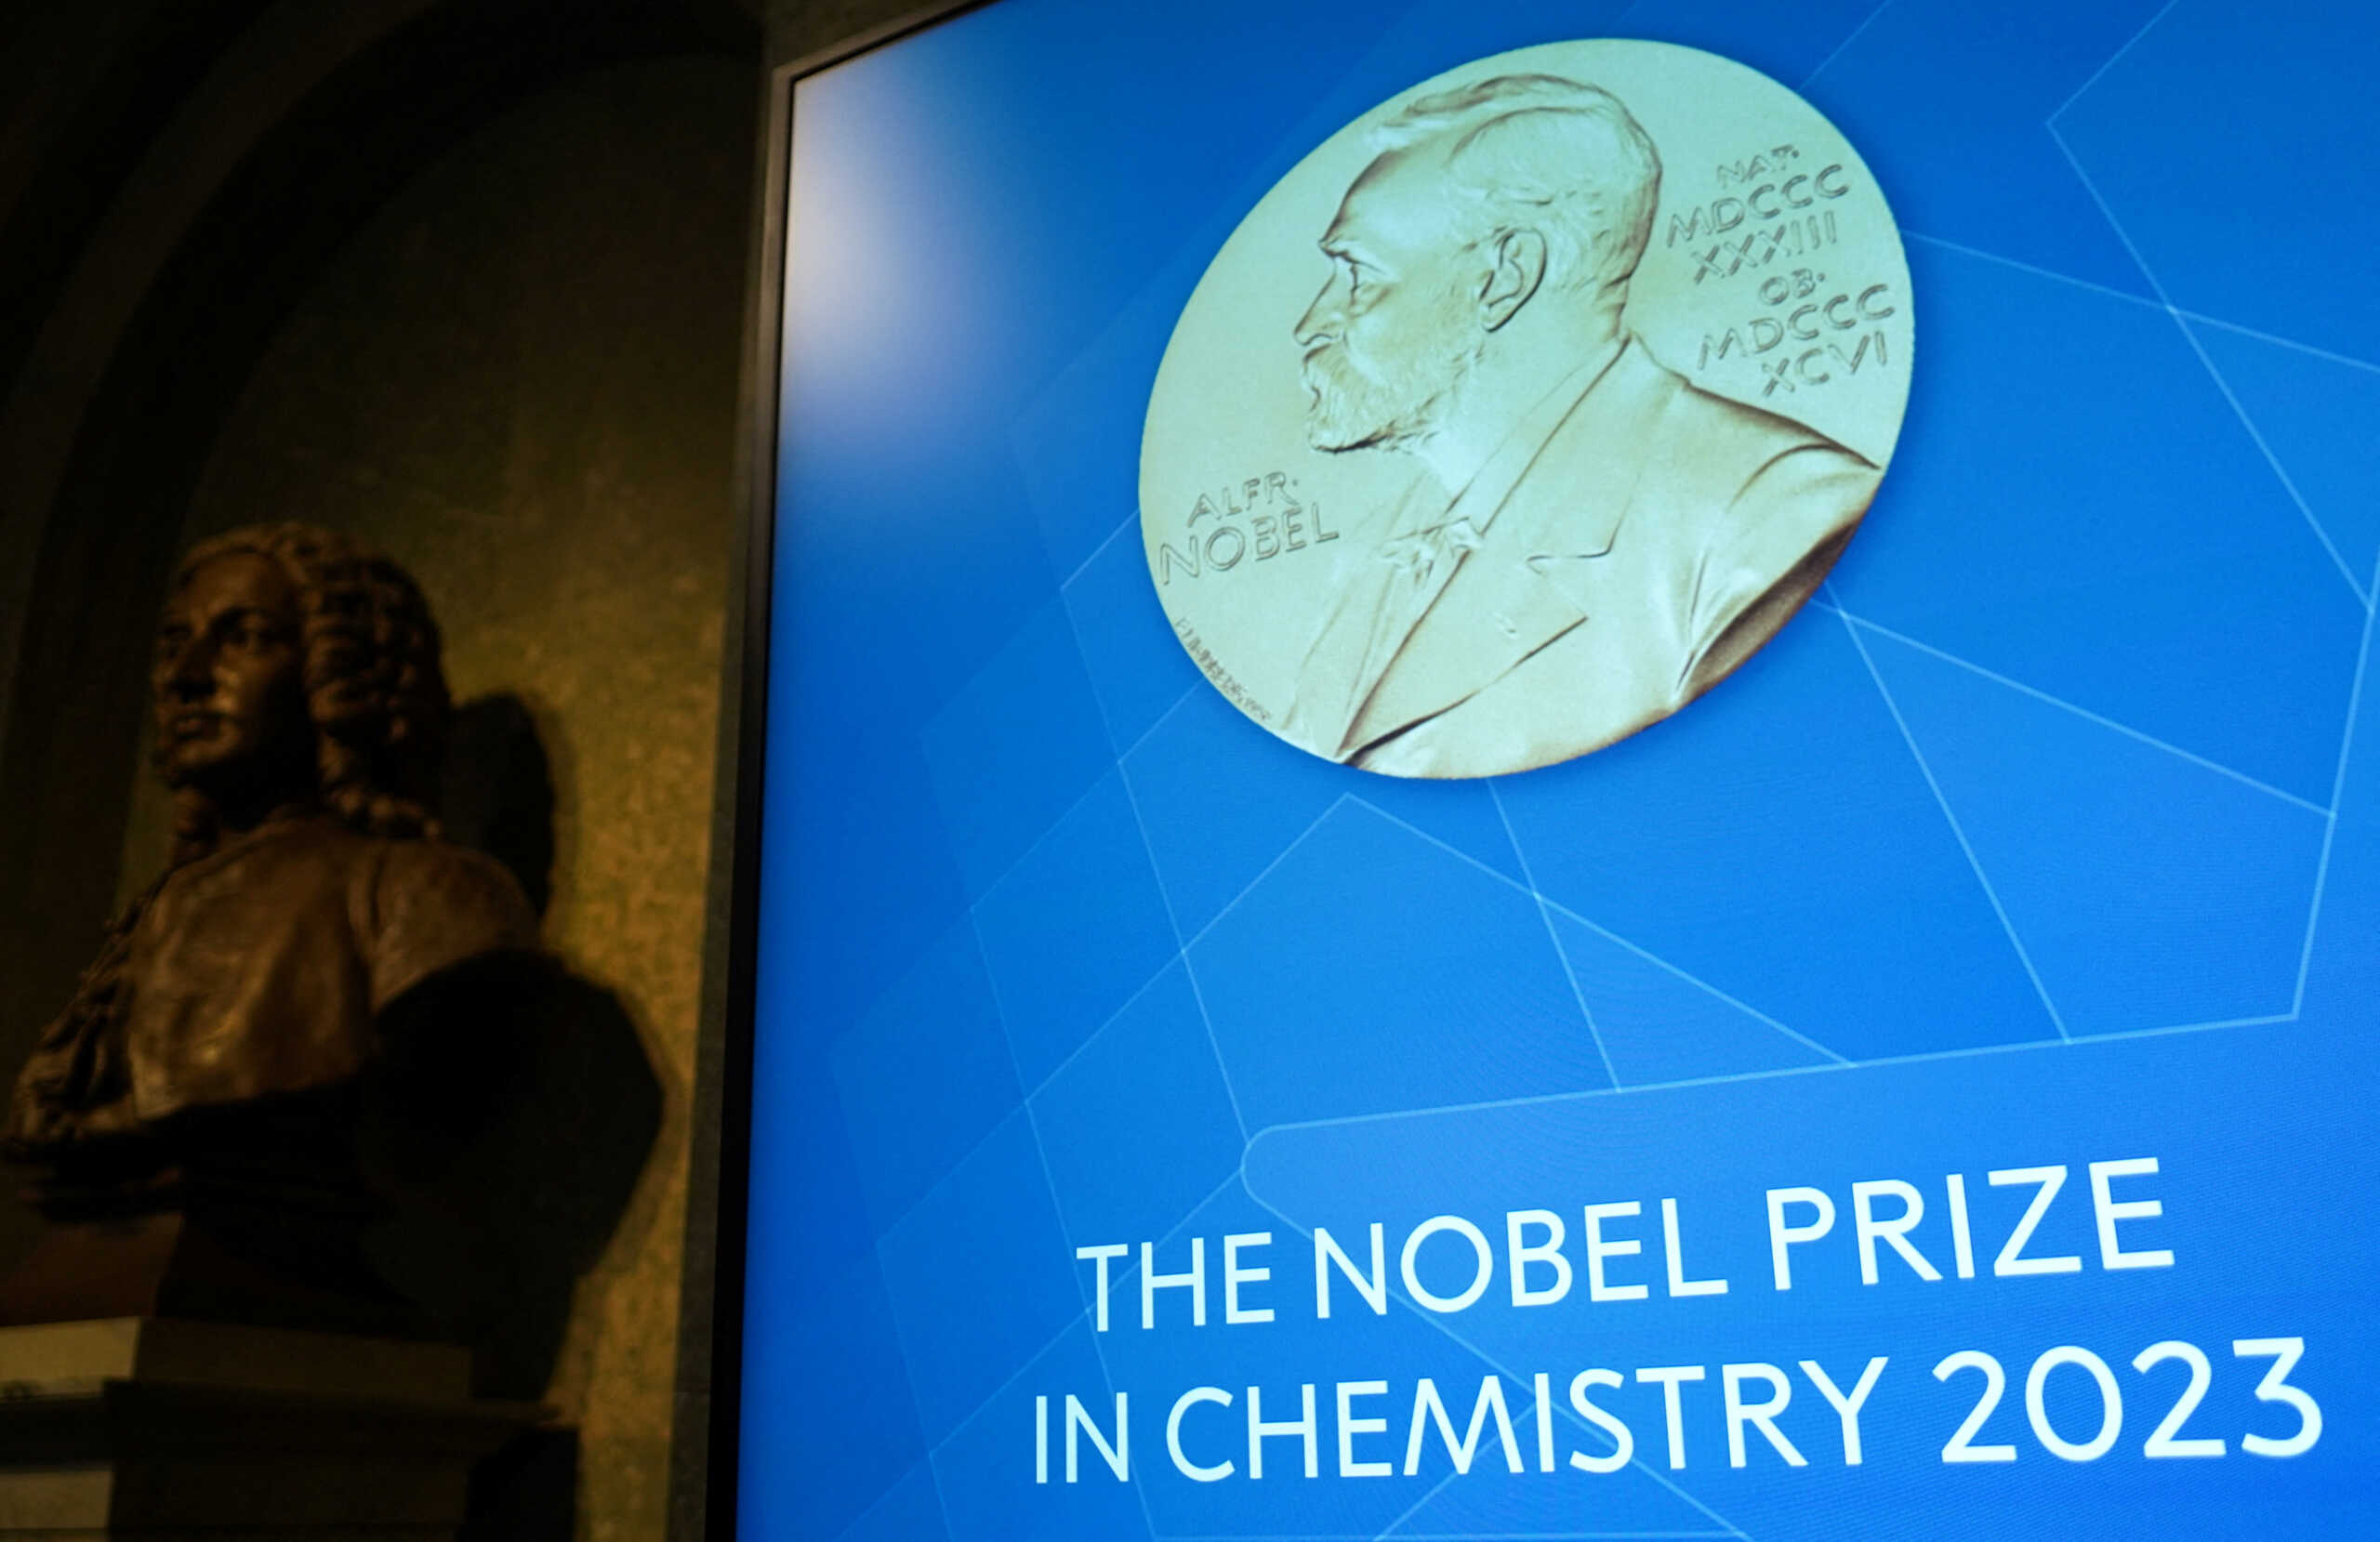 Νόμπελ Χημείας: Απονέμεται σε τρεις επιστήμονες για την ανακάλυψη των κβαντικών τελειών